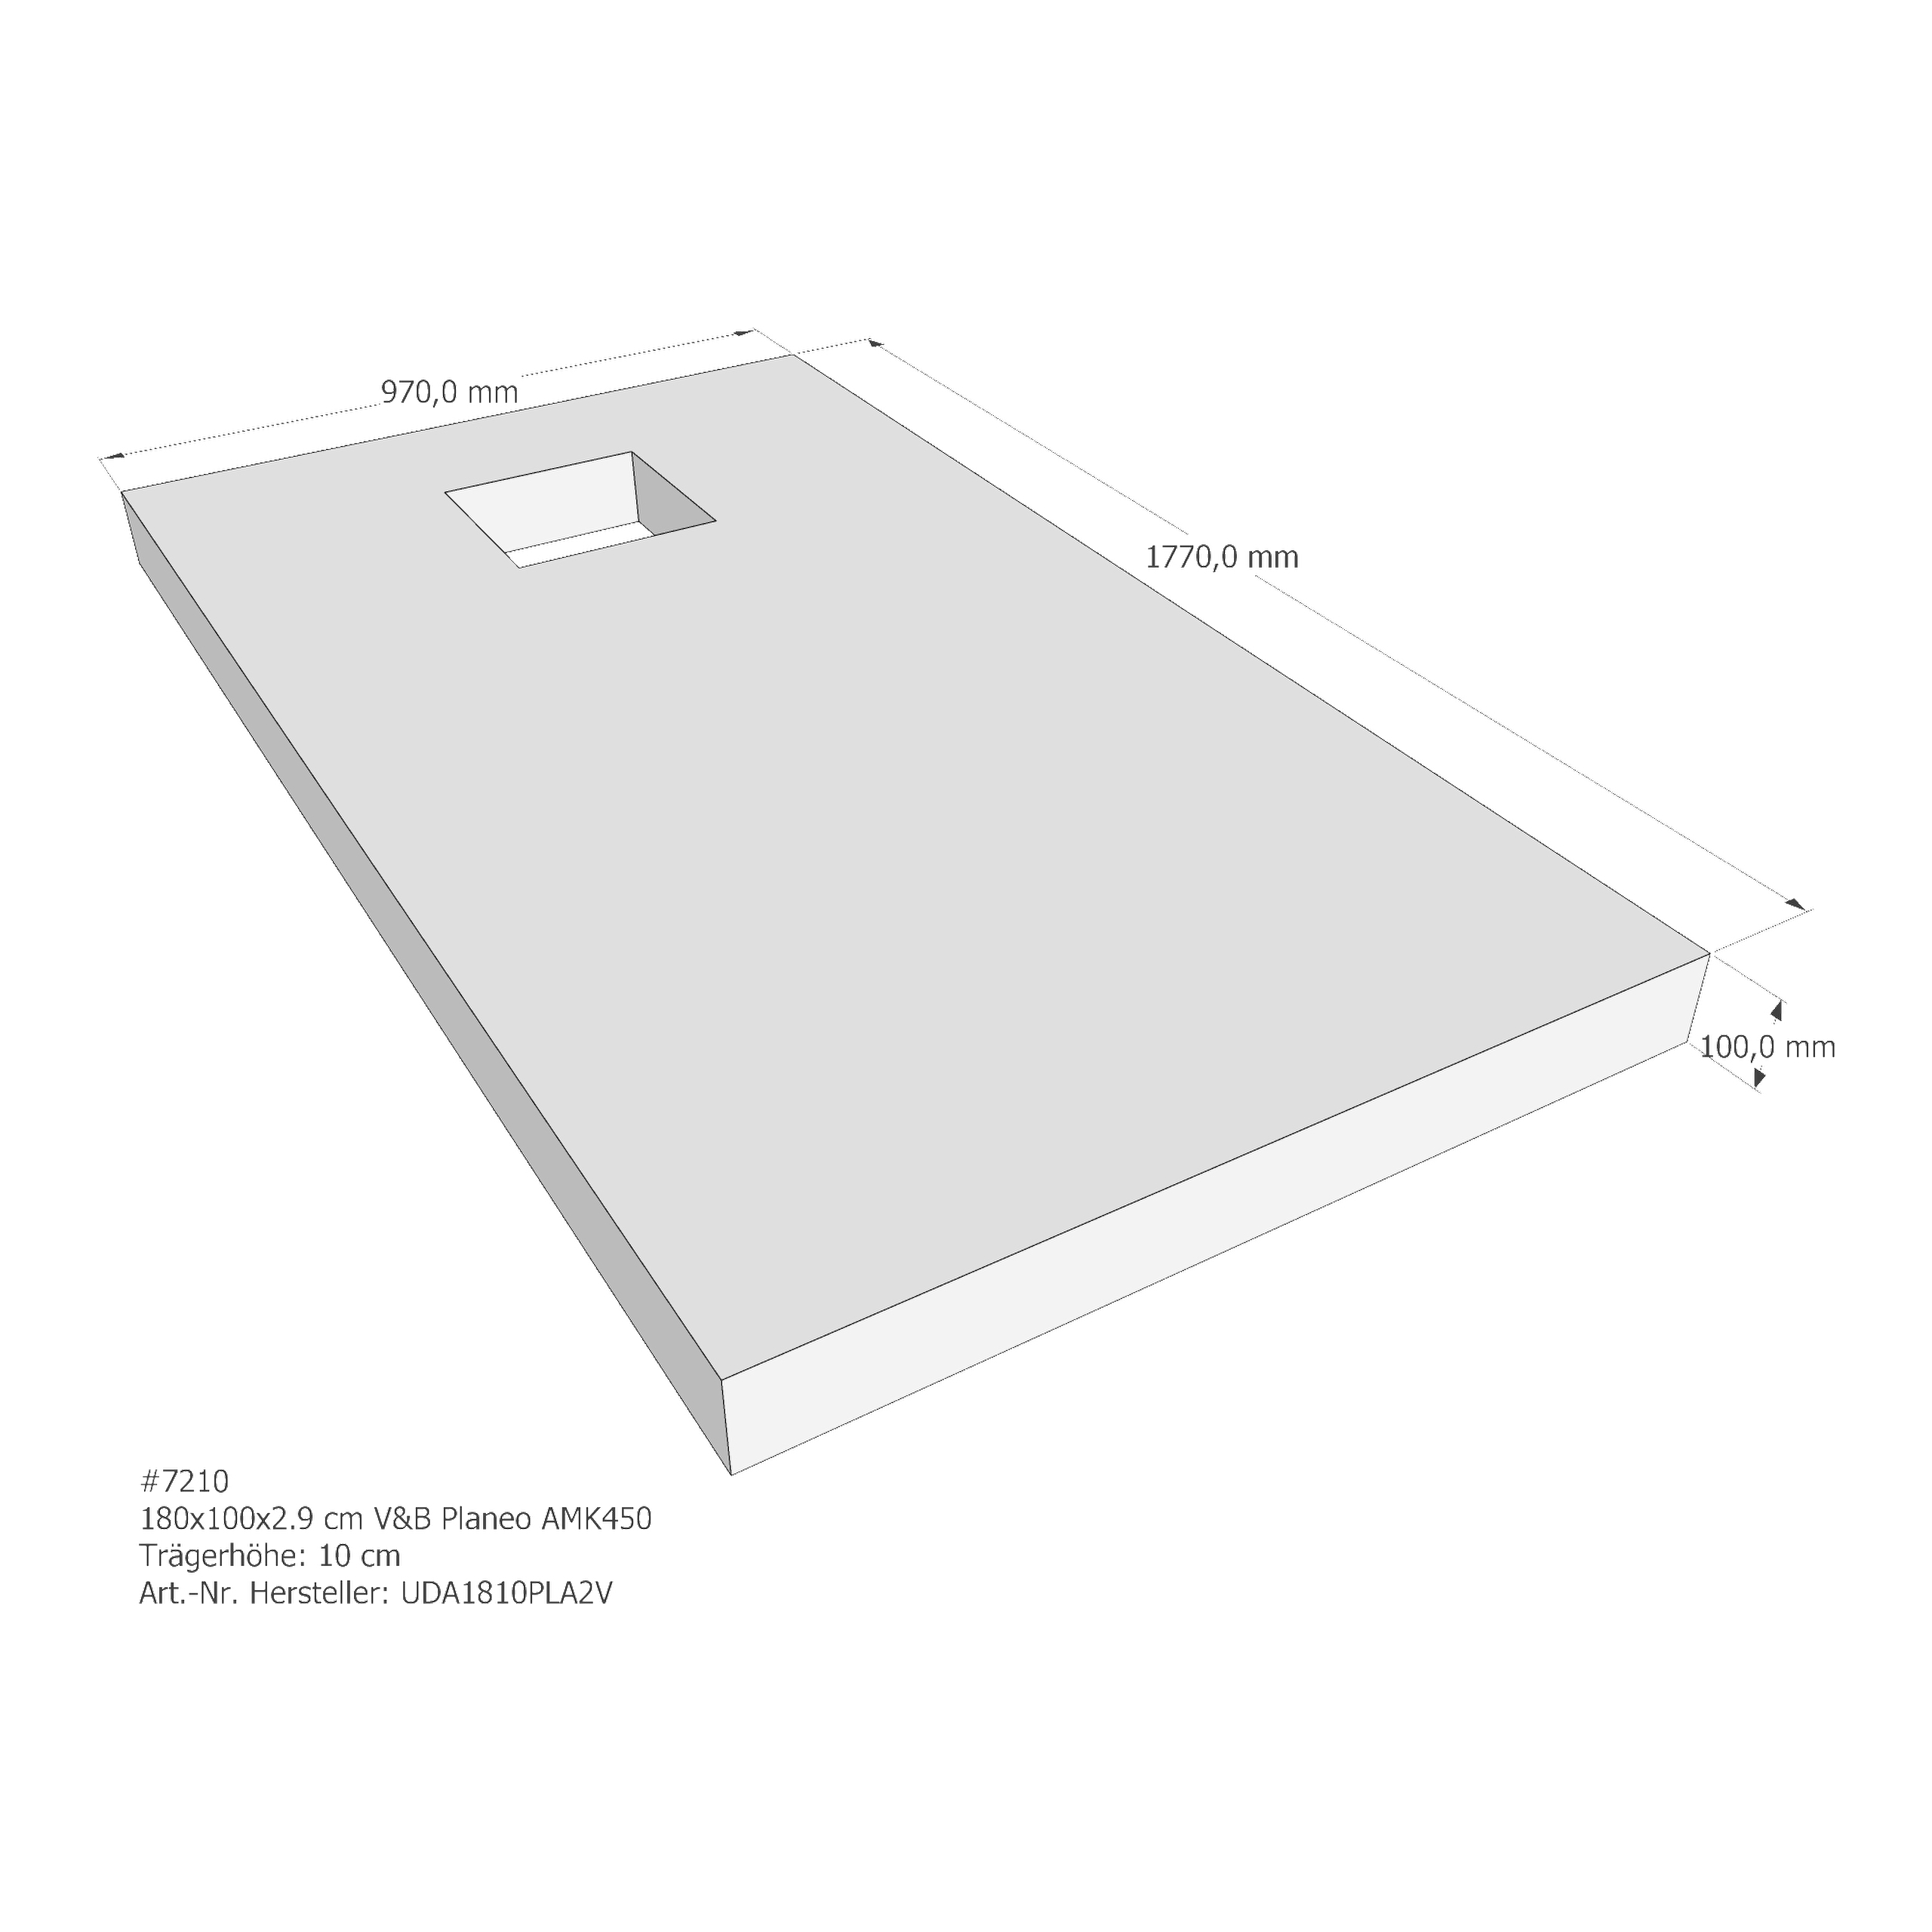 Duschwannenträger für Villeroy & Boch Planeo 180 × 100 × 2,9 cm